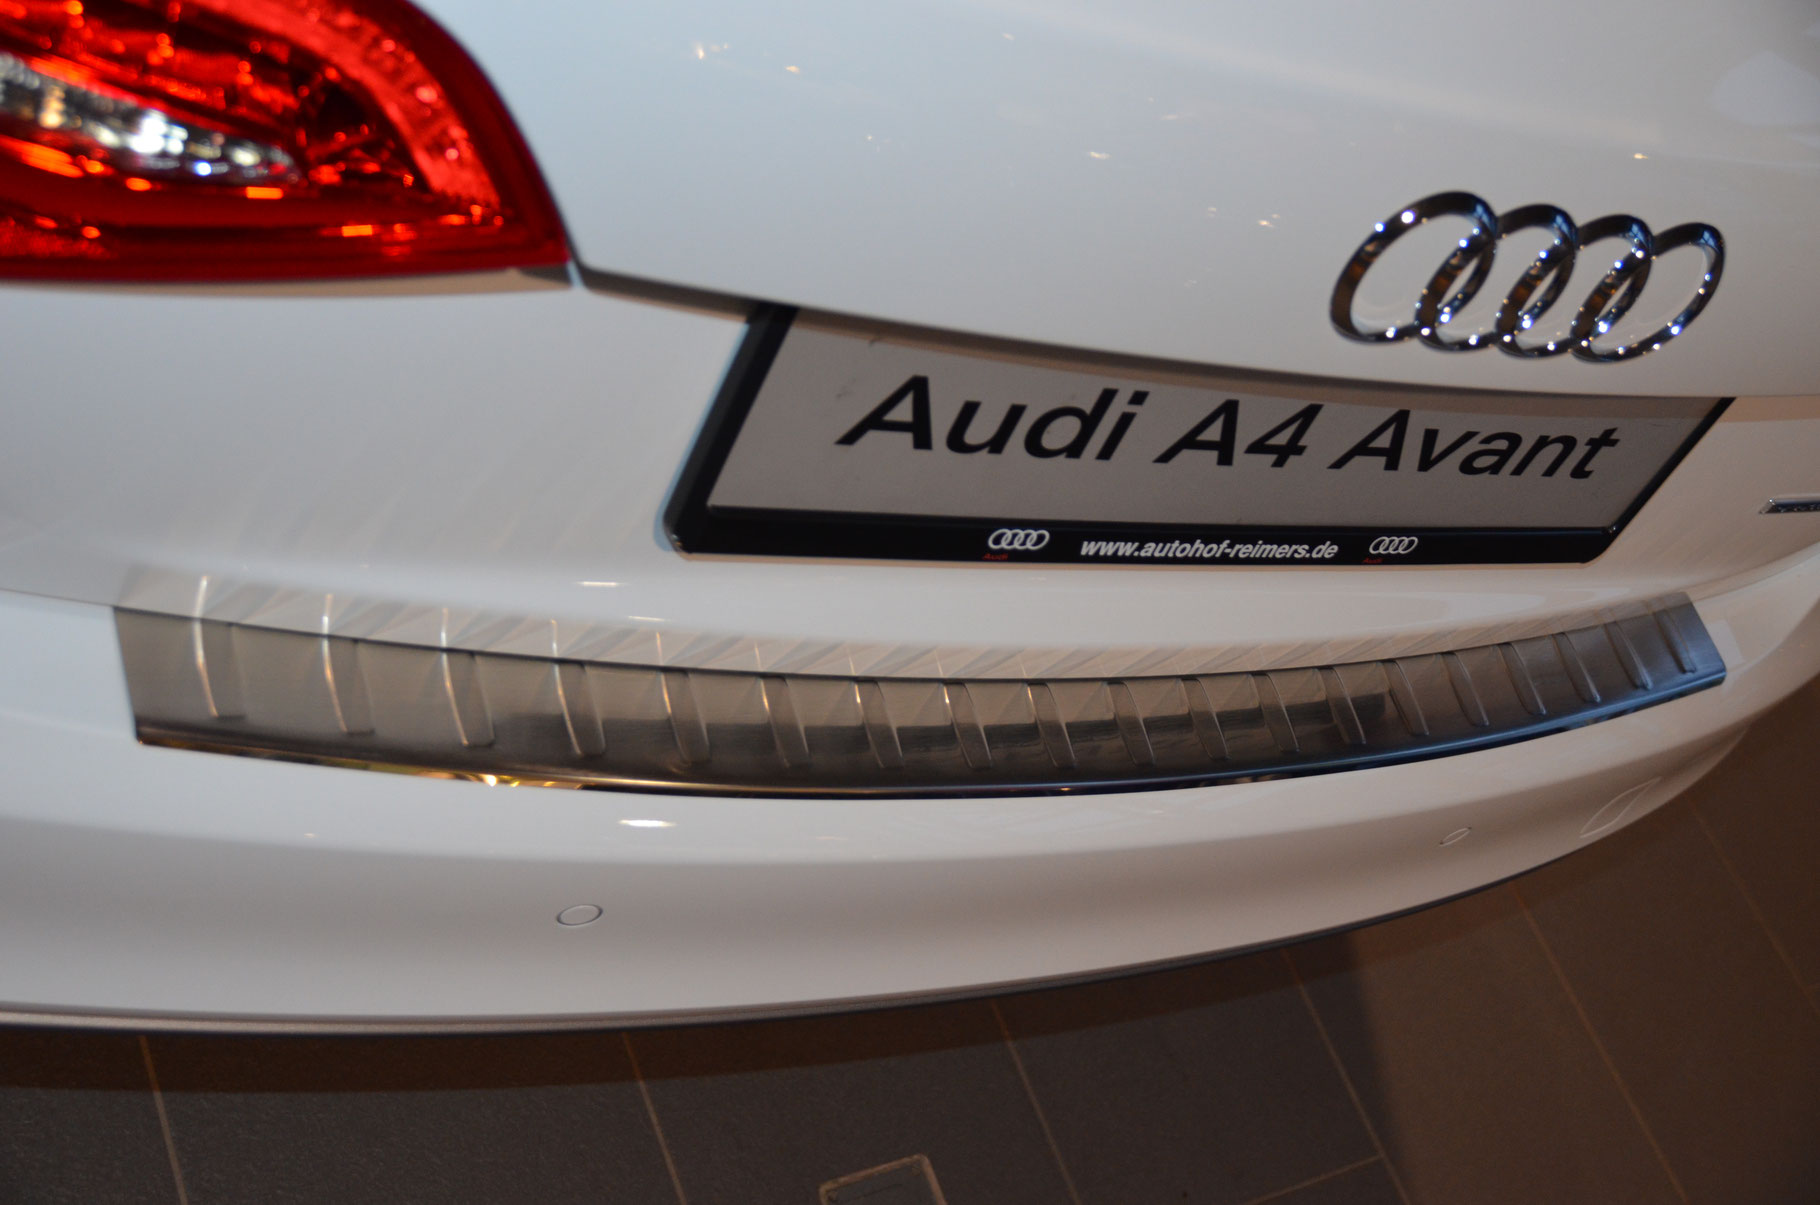 Ladekantenschutz für AUDI A4 AVANT - Schutz für die Ladekante Ihres  Fahrzeuges